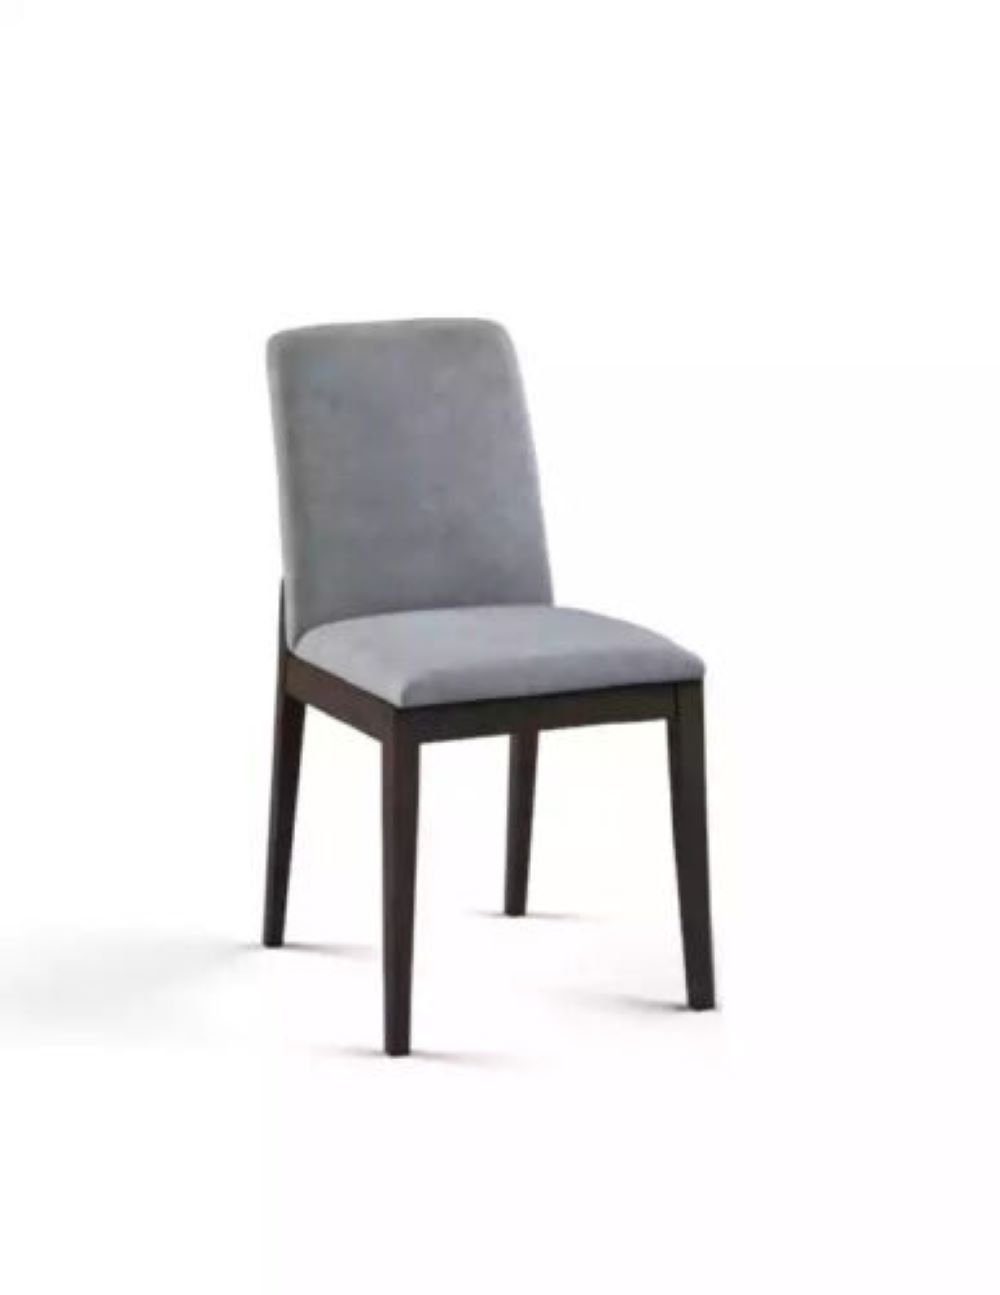 JVmoebel Stuhl Esszimmerstühle Wohnzimmer Stuhl mit Holzbeinen Modern neu Grau, Made in Italya